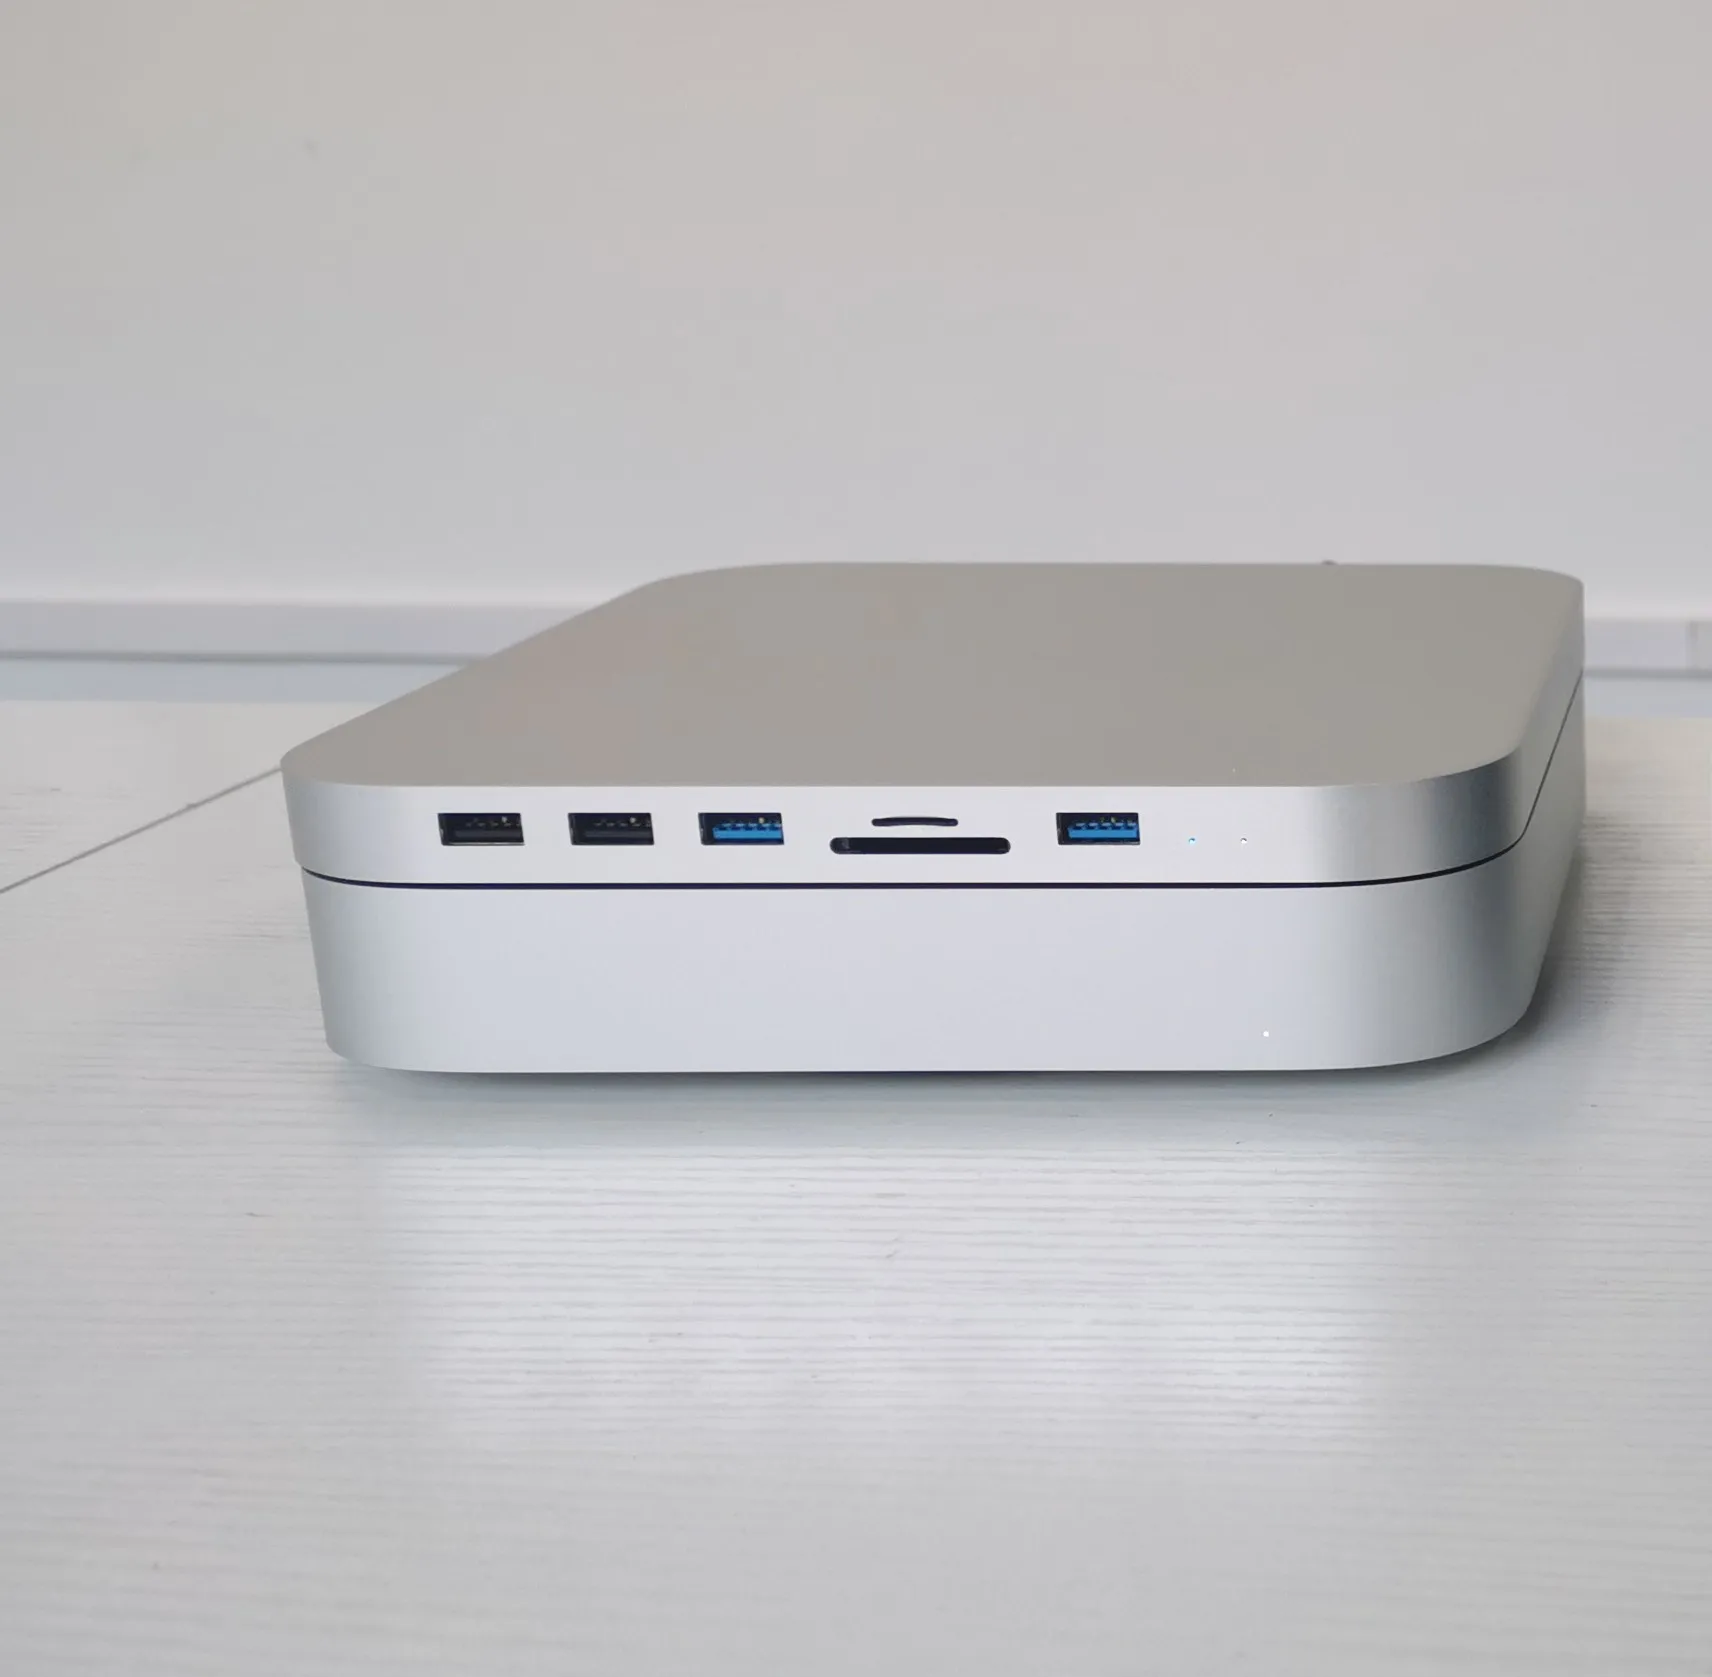 wireless router for mac mini